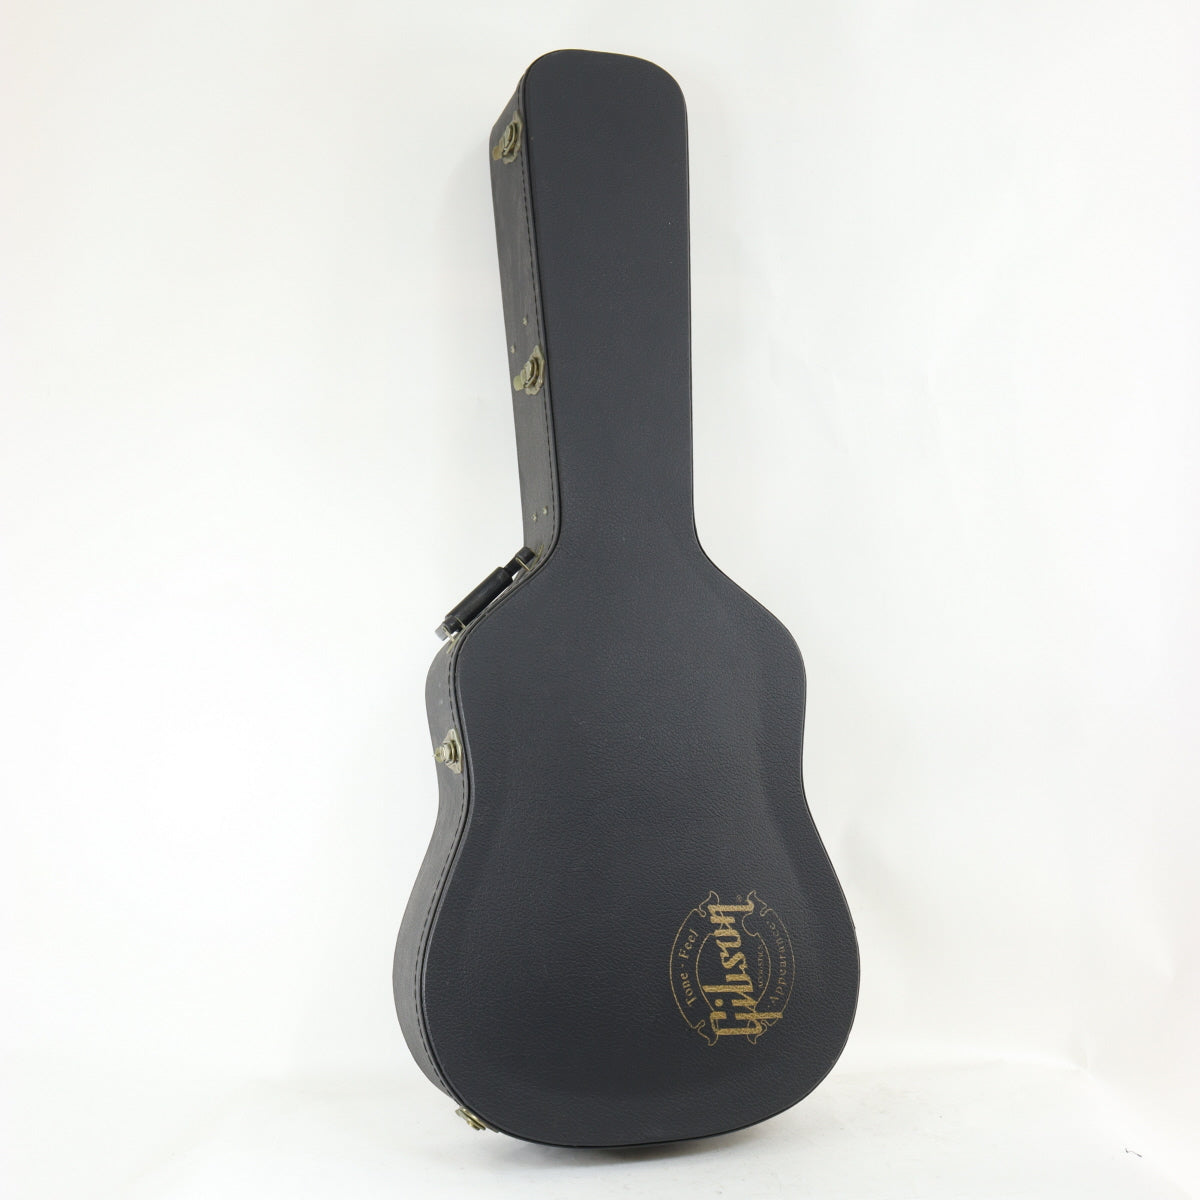 [SN 91787035] USED Gibson Montana Gibson / Early 60s Humming Bird Vintage Cherry Sunburst [20]